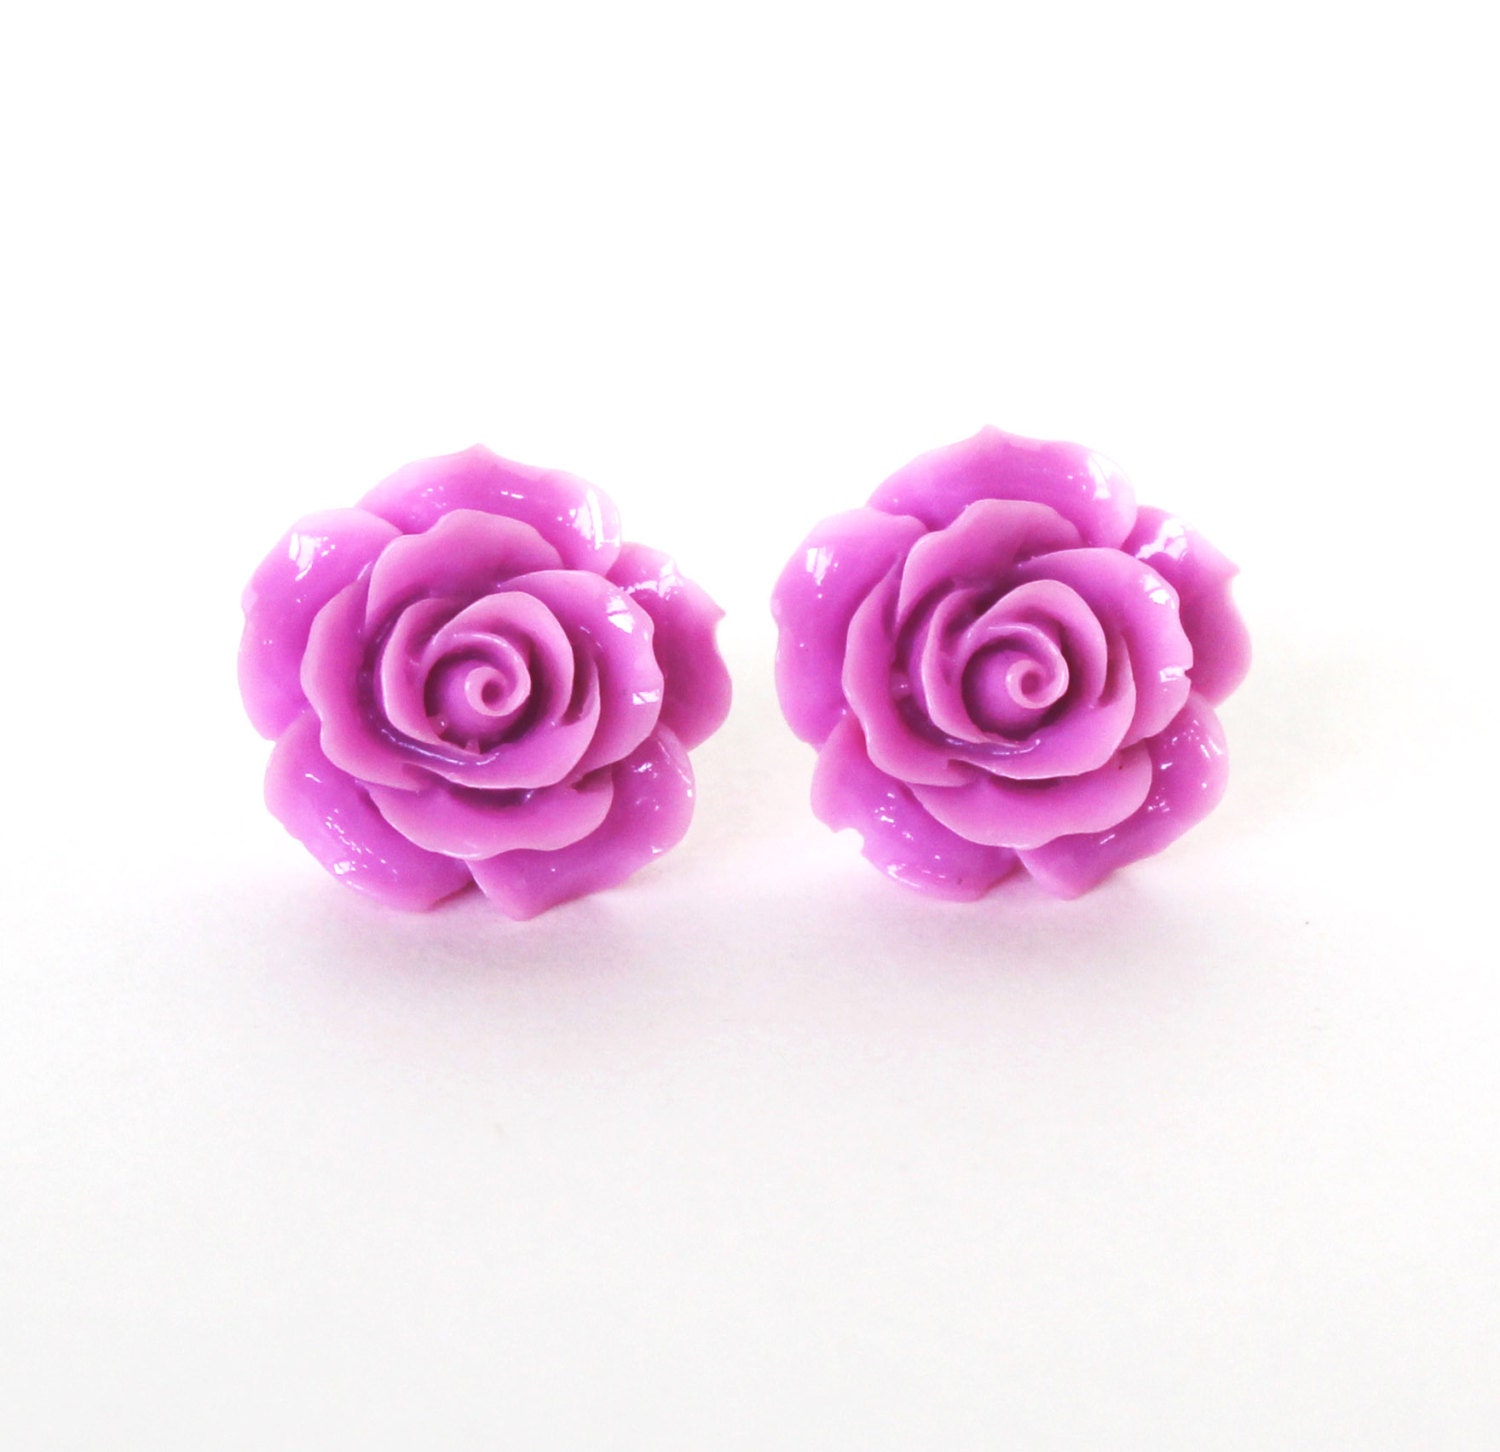 Purple rose flower resin post earrings | Etsy